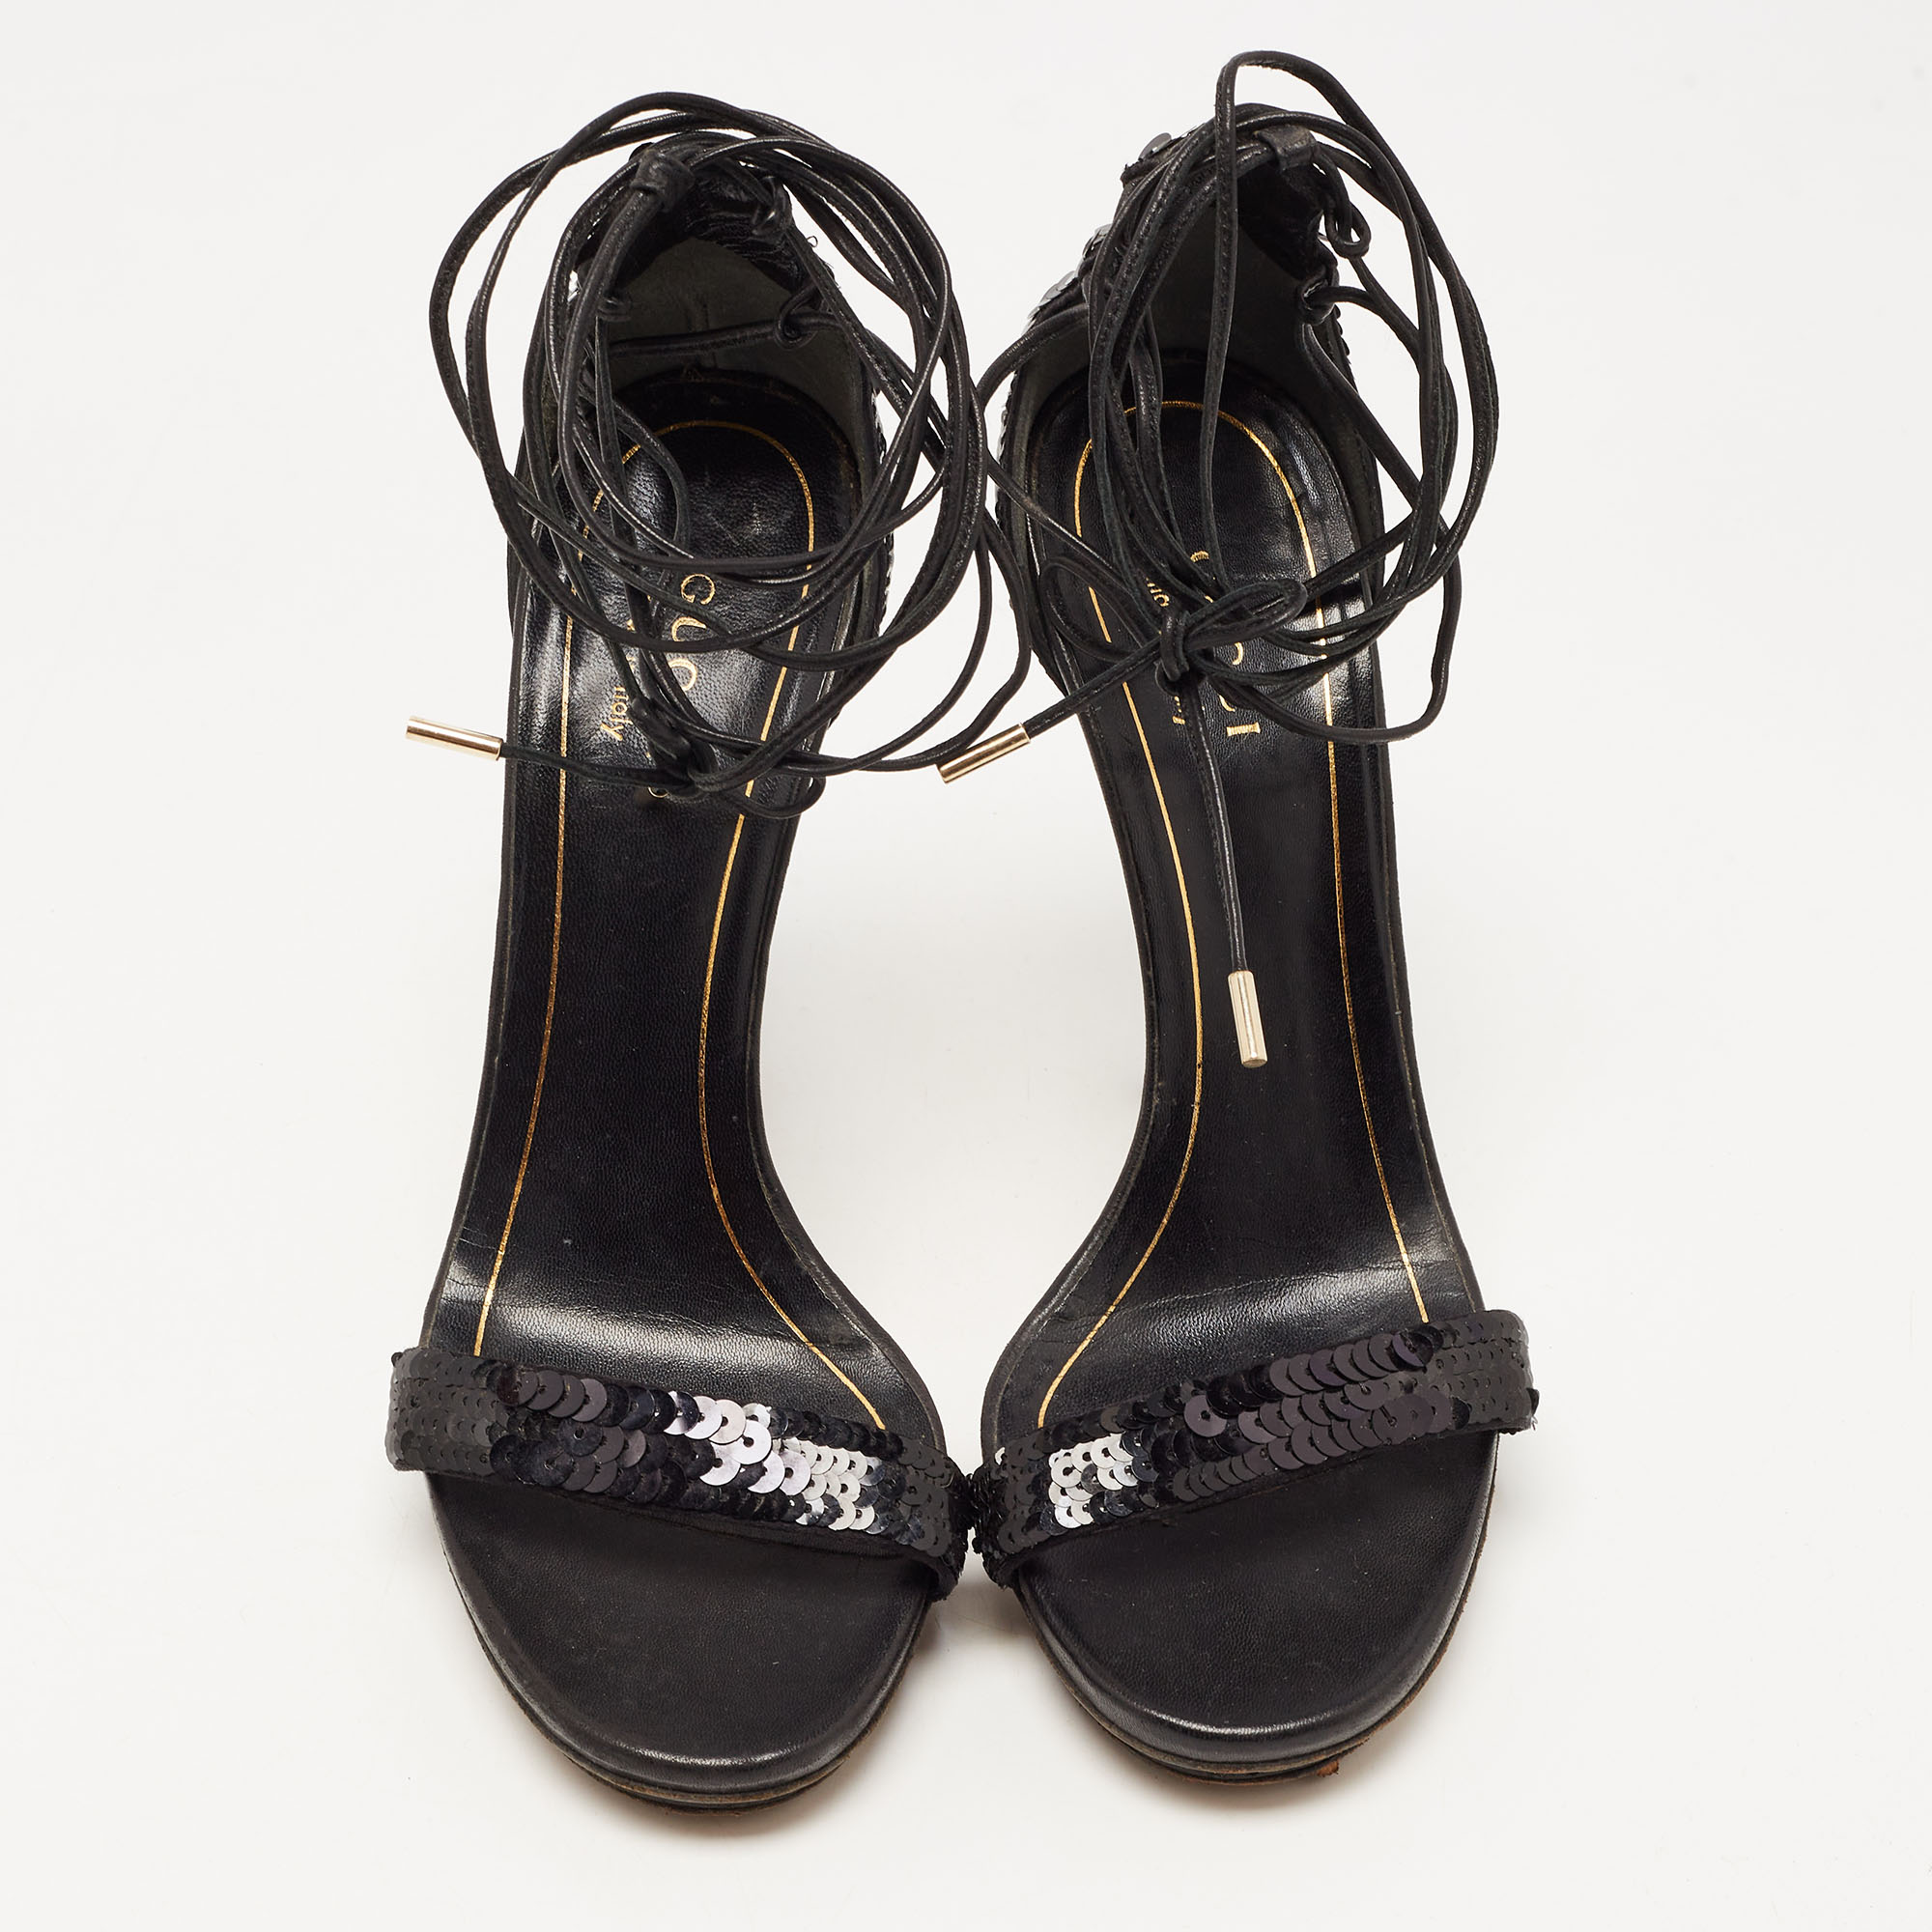 Gucci Black Sequins Ankle Tie Platform Sandals Size 36